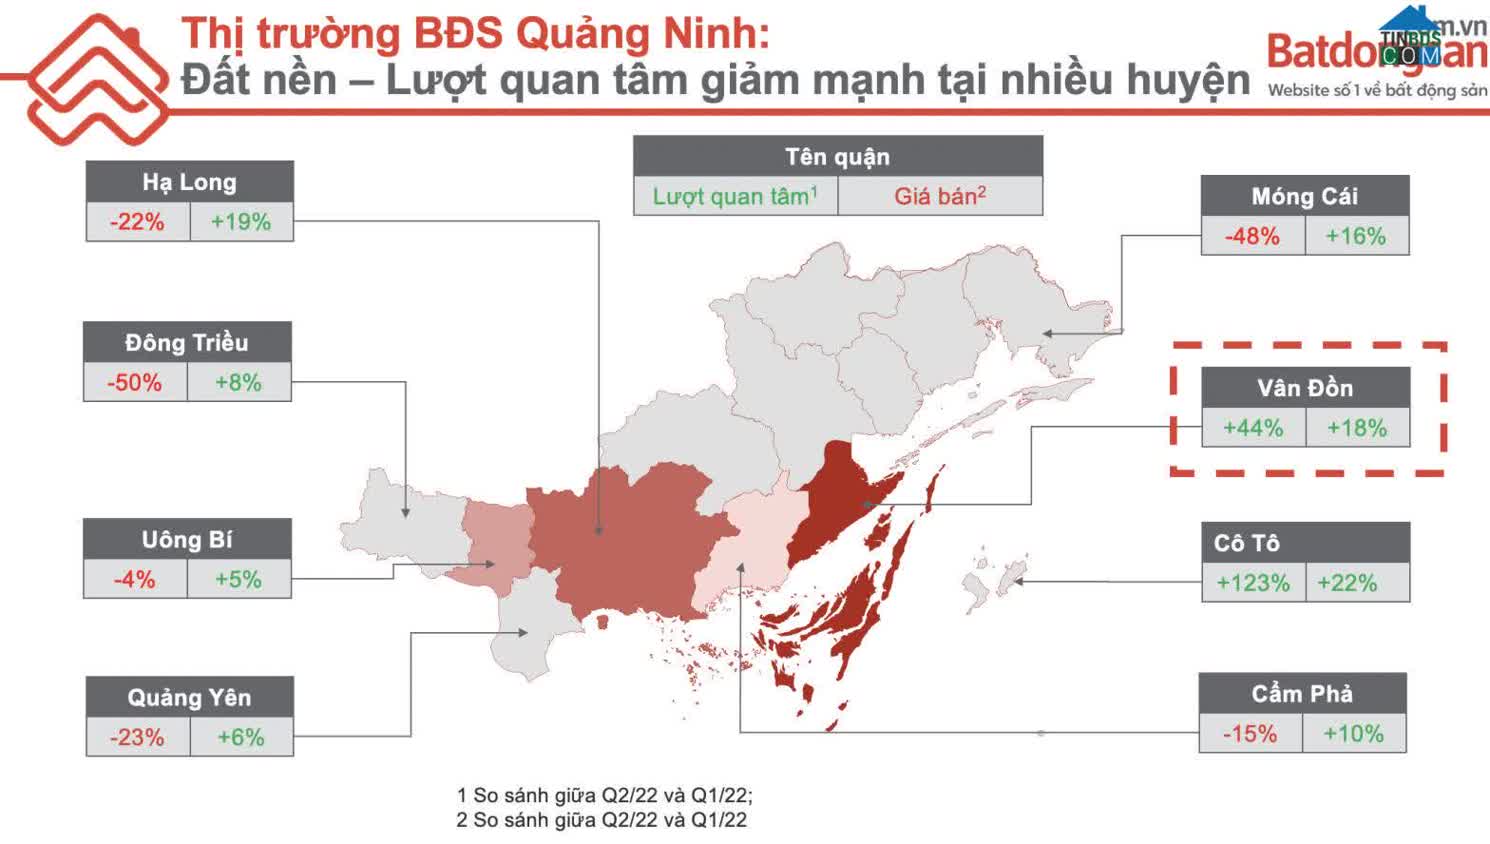 Ảnh Bất động sản Quảng Ninh: Nhu cầu về đất nền giảm, chung cư tăng mạnh